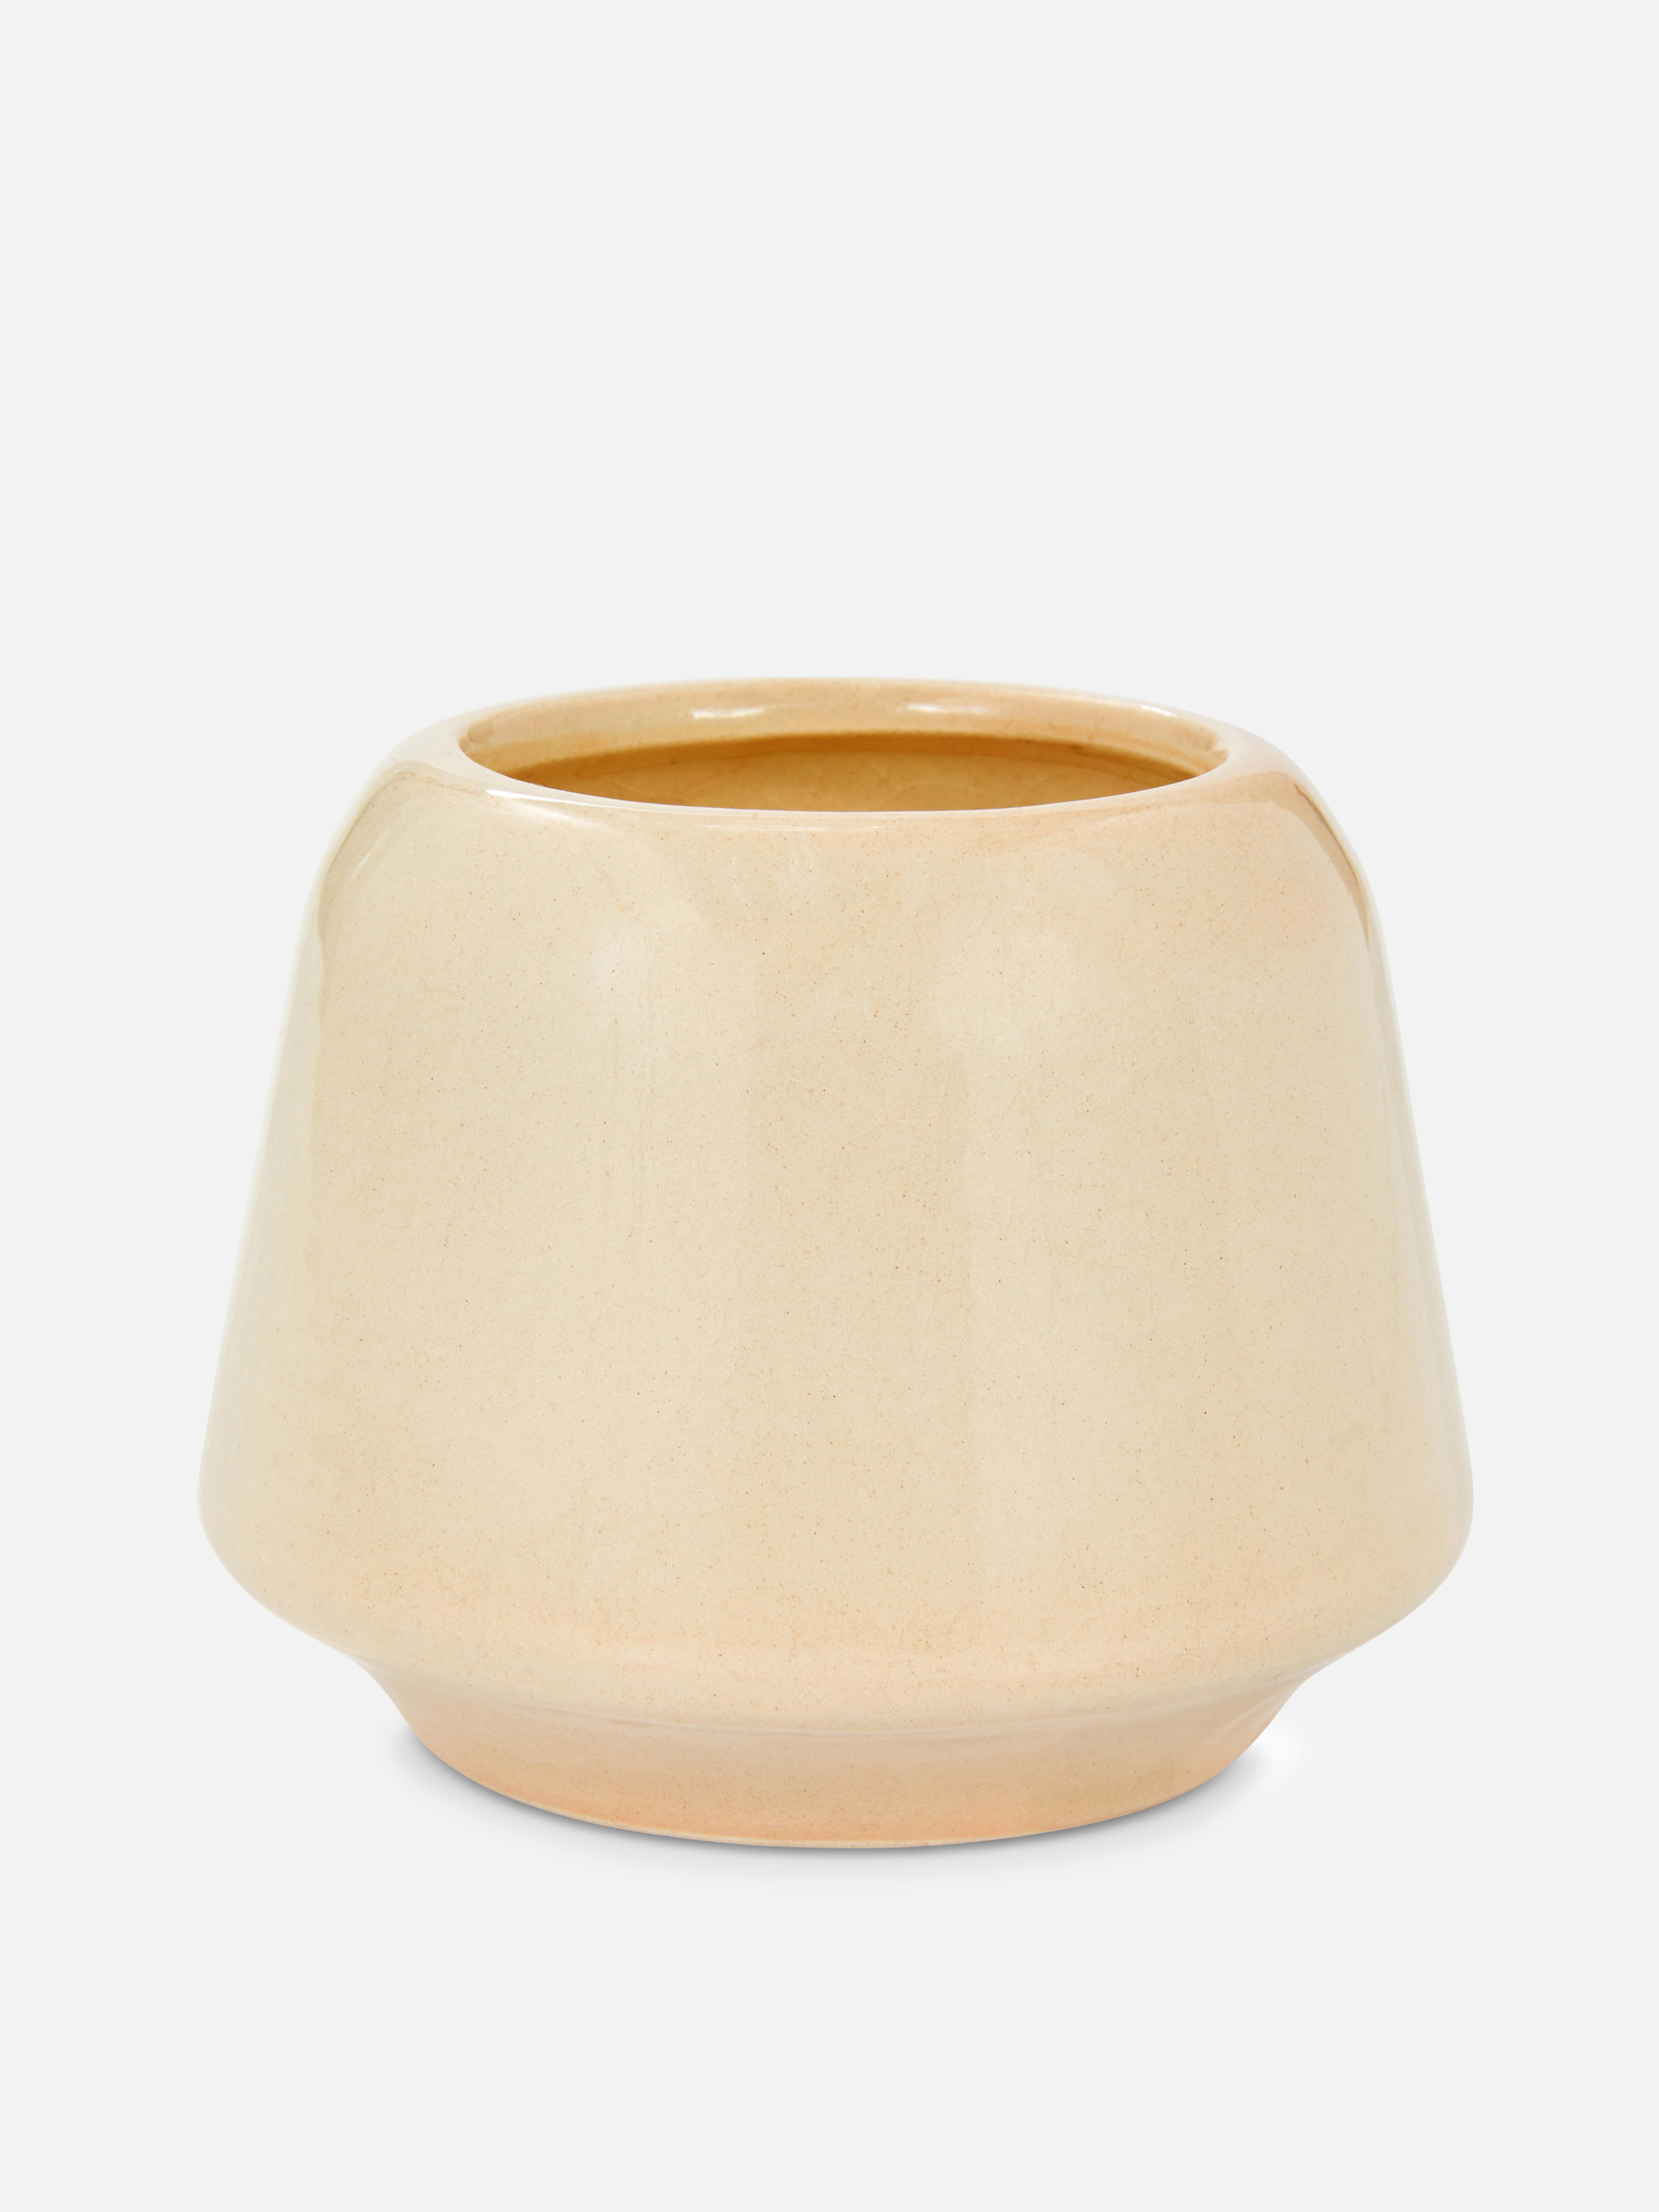 Candela curva in ceramica